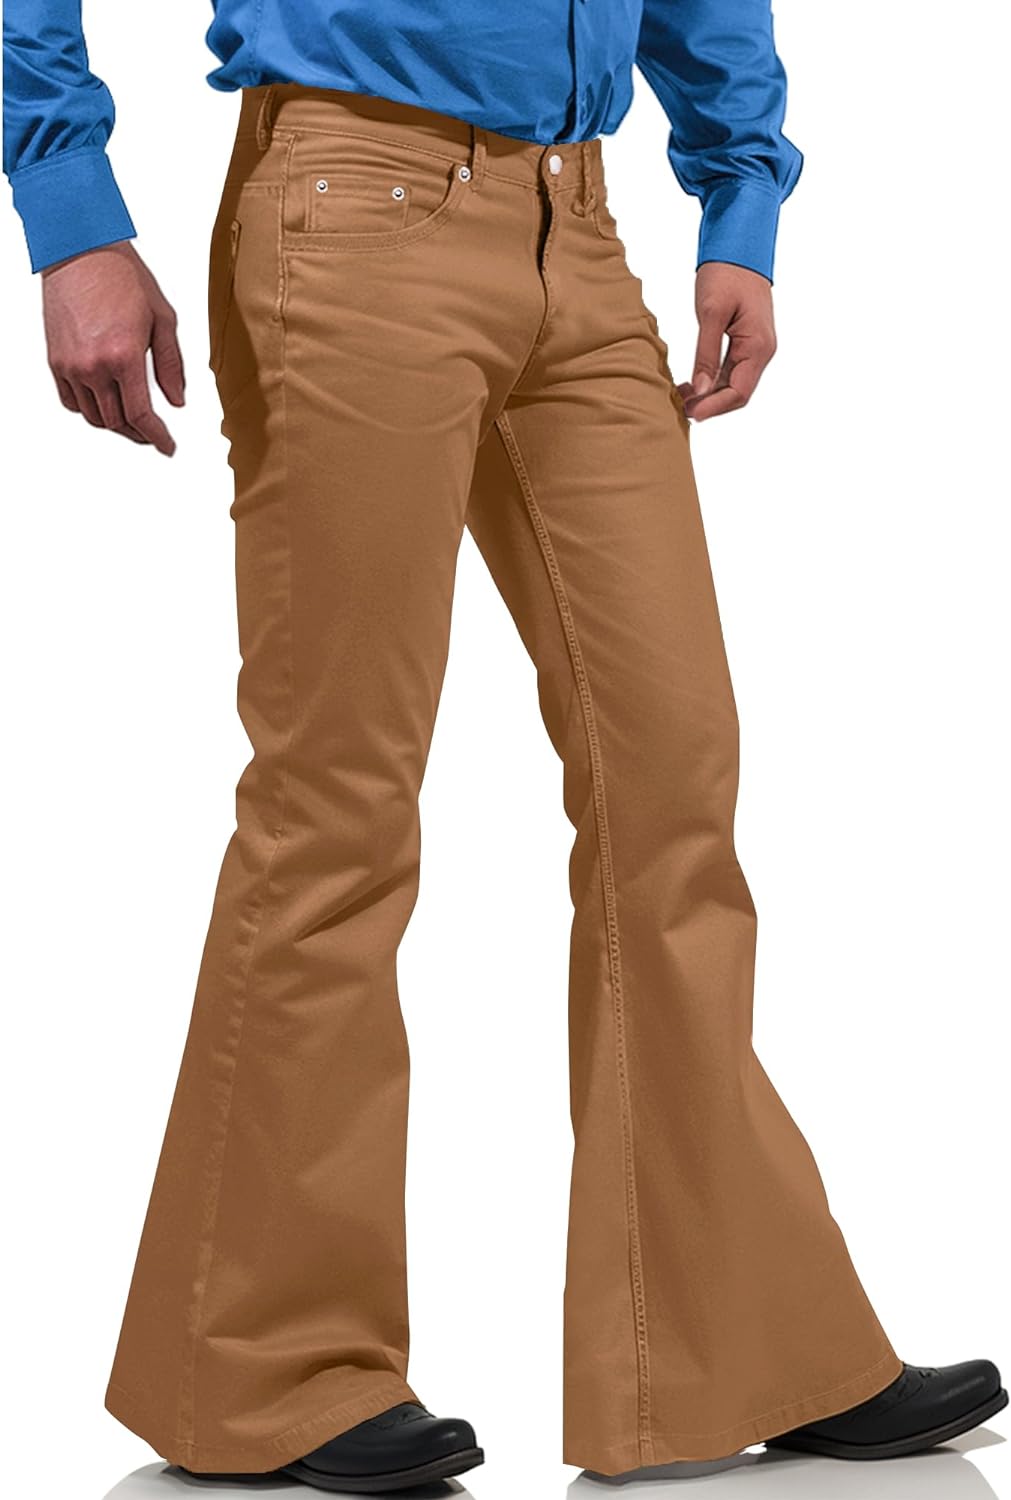 70s Disco Pants for Men,Mens Bell Bottom Jeans,60s 70s Bell